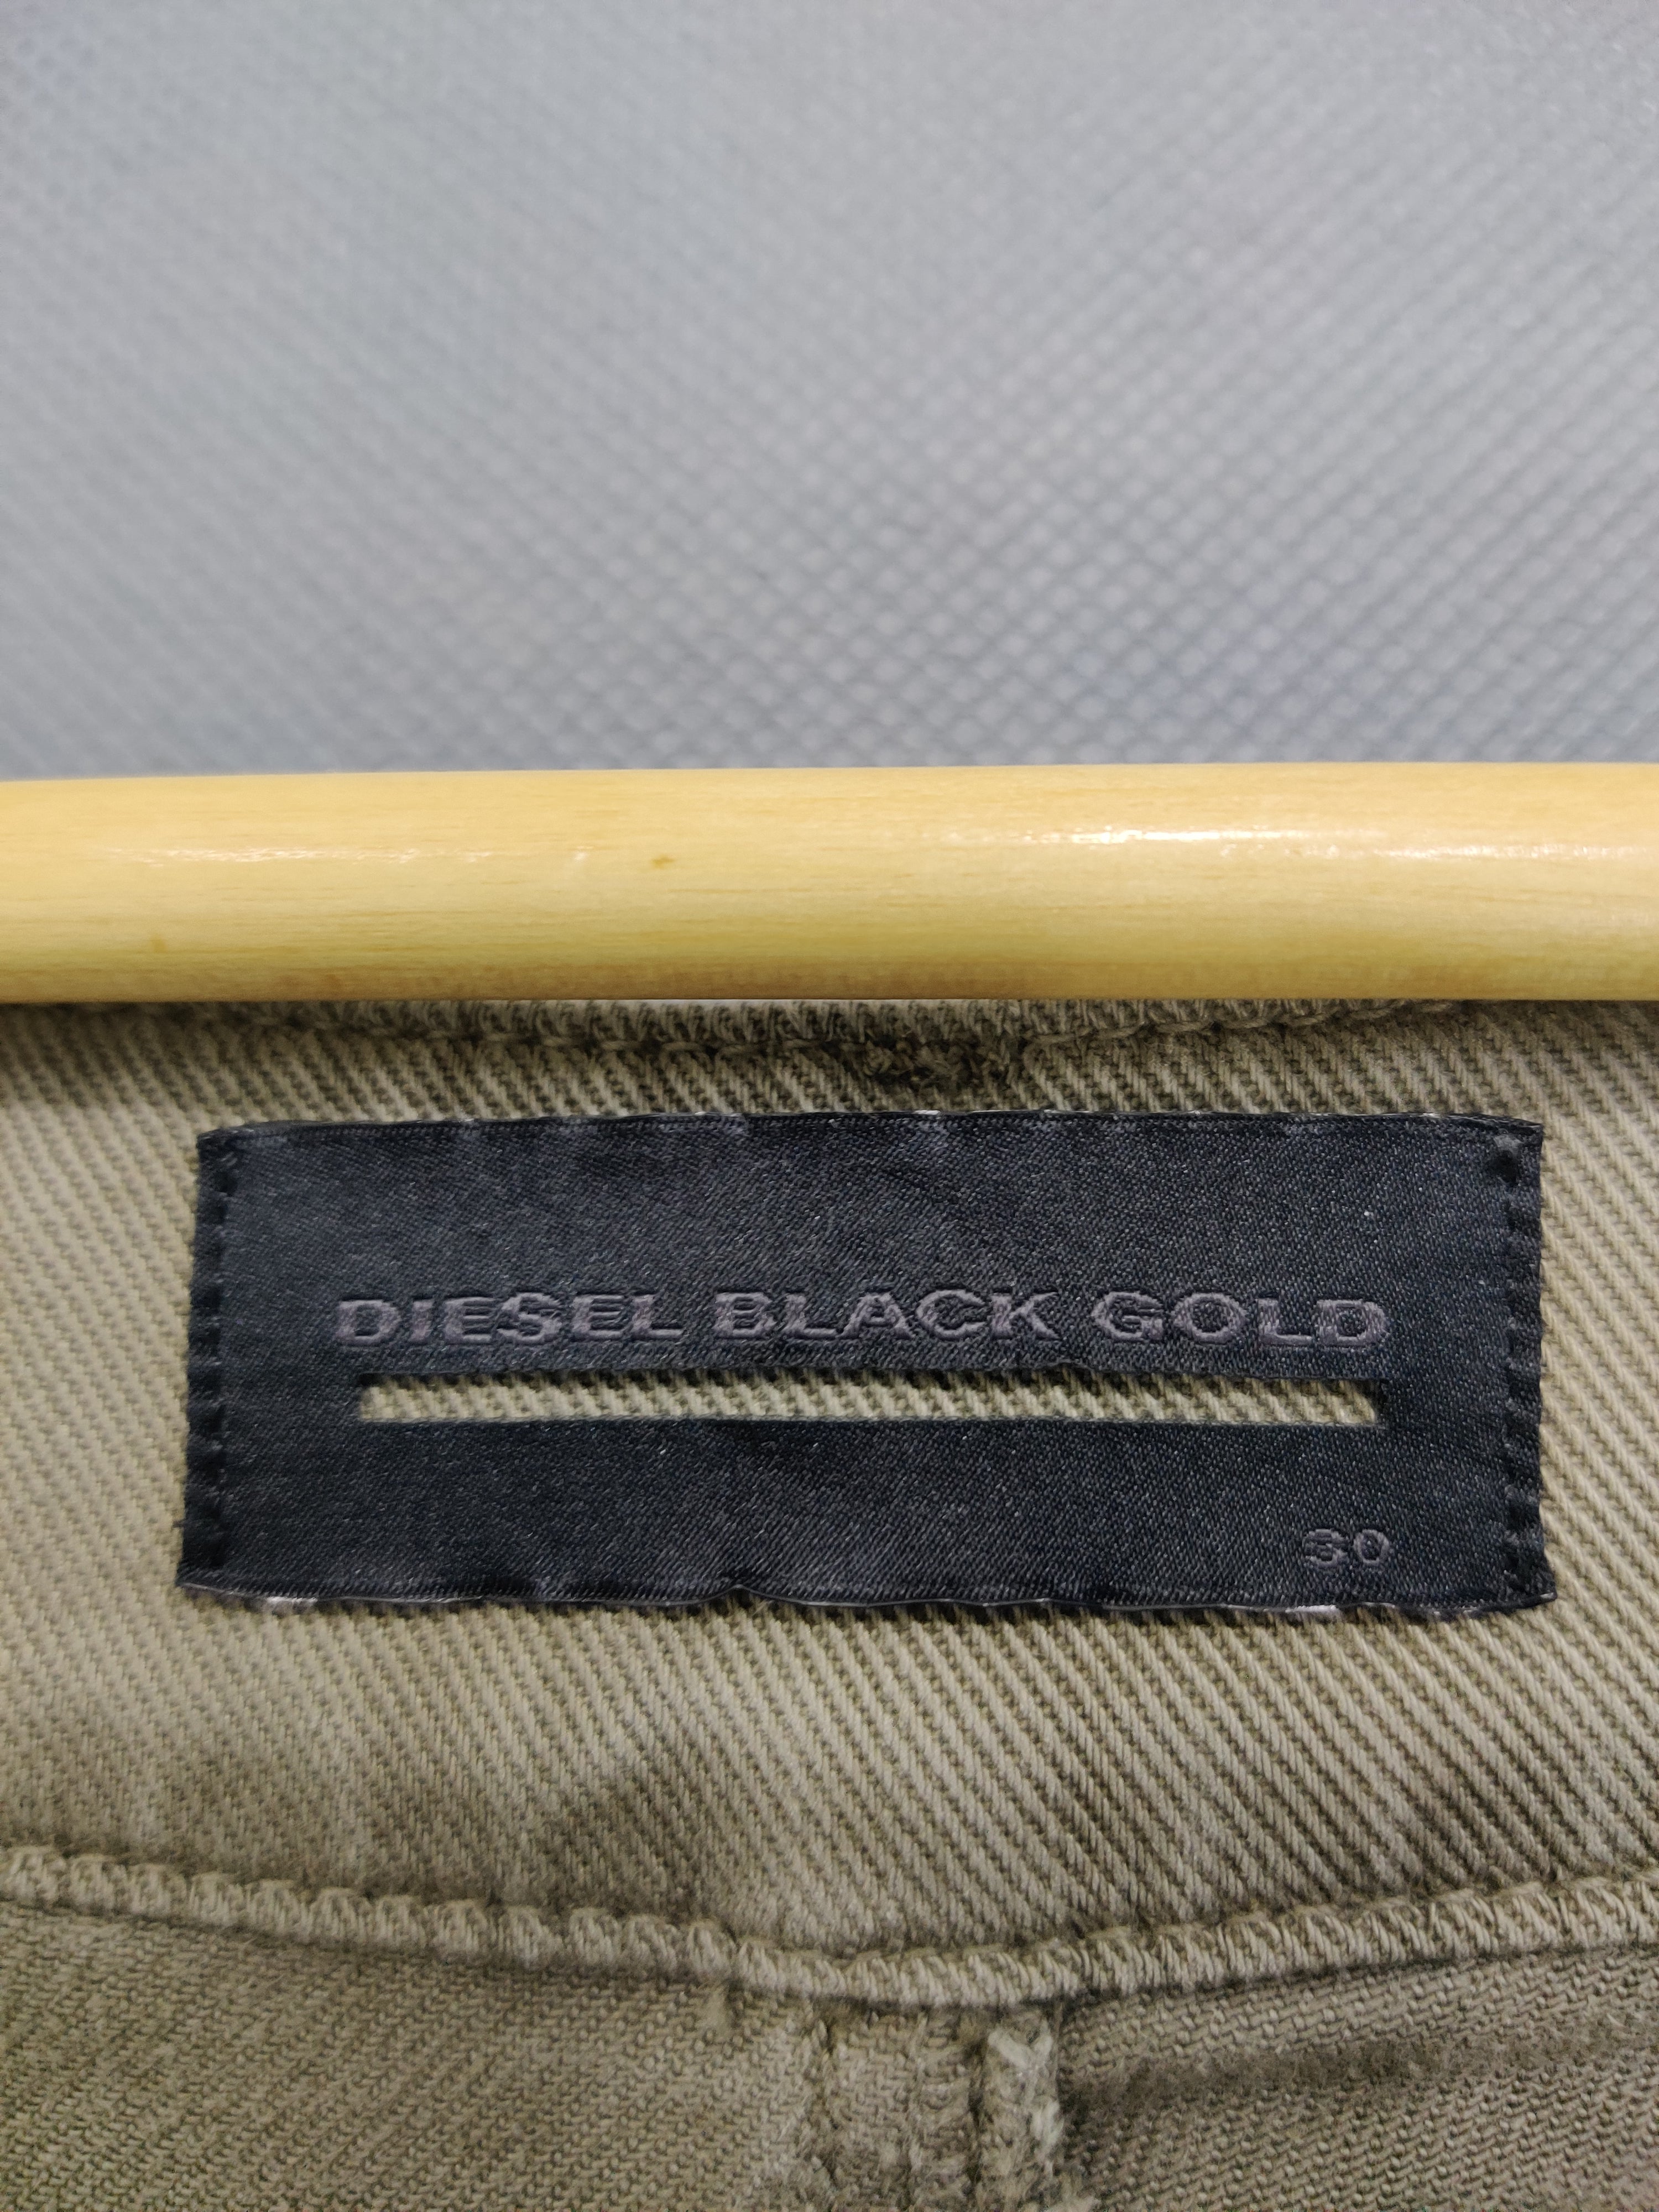 Diesel Black Gold Branded Original Denim Jeans For Men